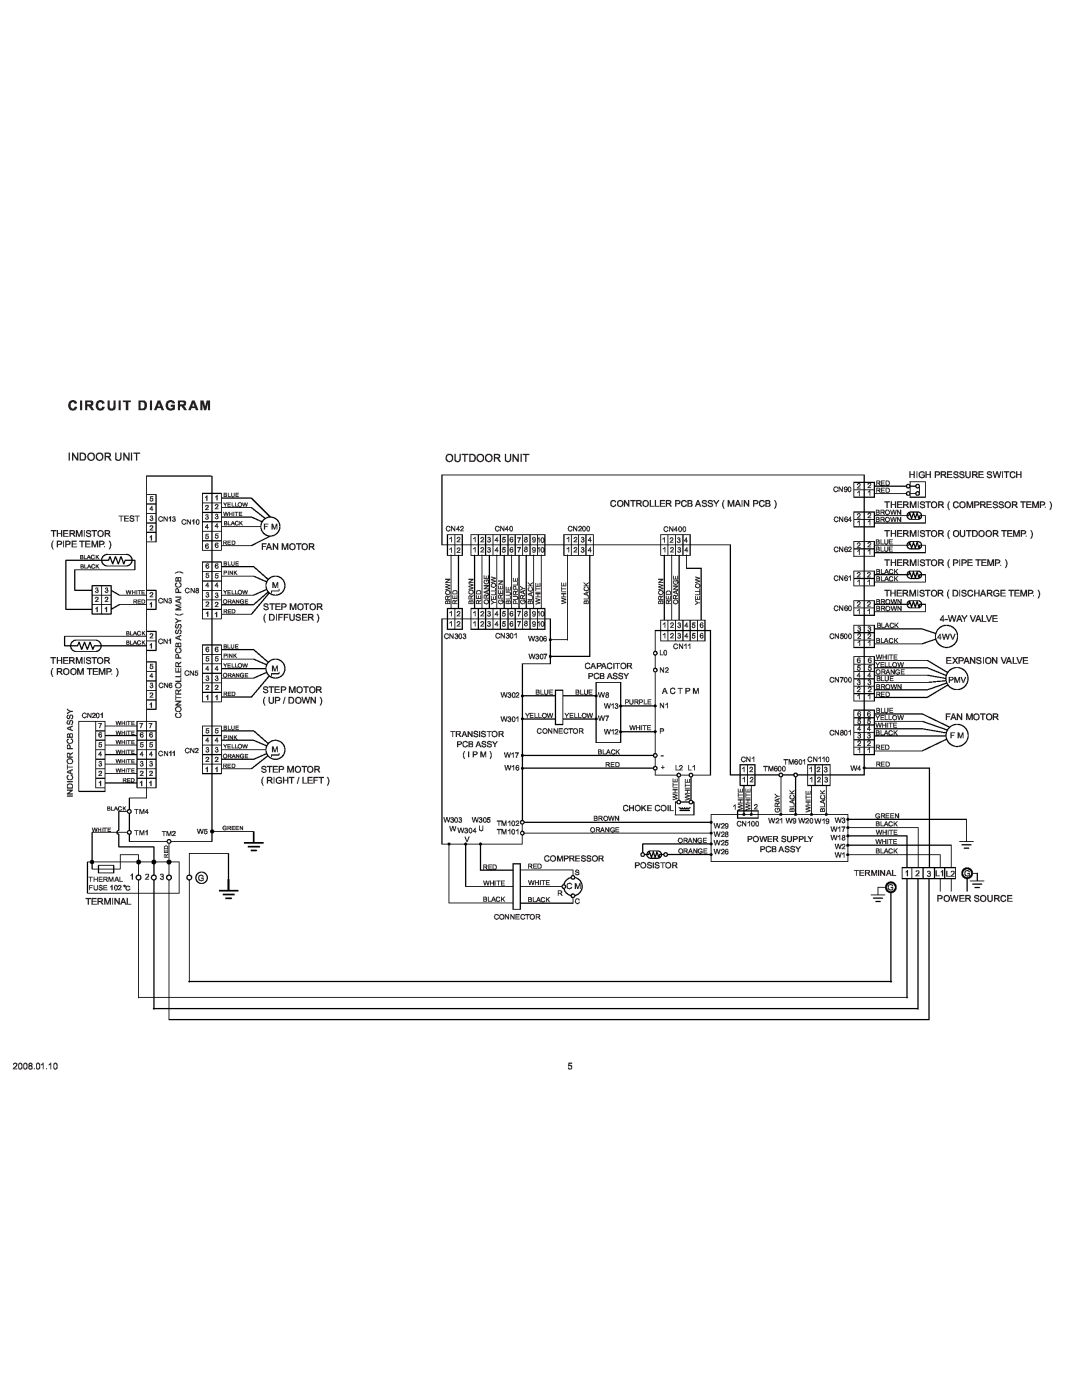 Friedrich MW36C3F, MR36C3F specifications Circuit Diagram, Indoor Unit, Outdoor Unit 